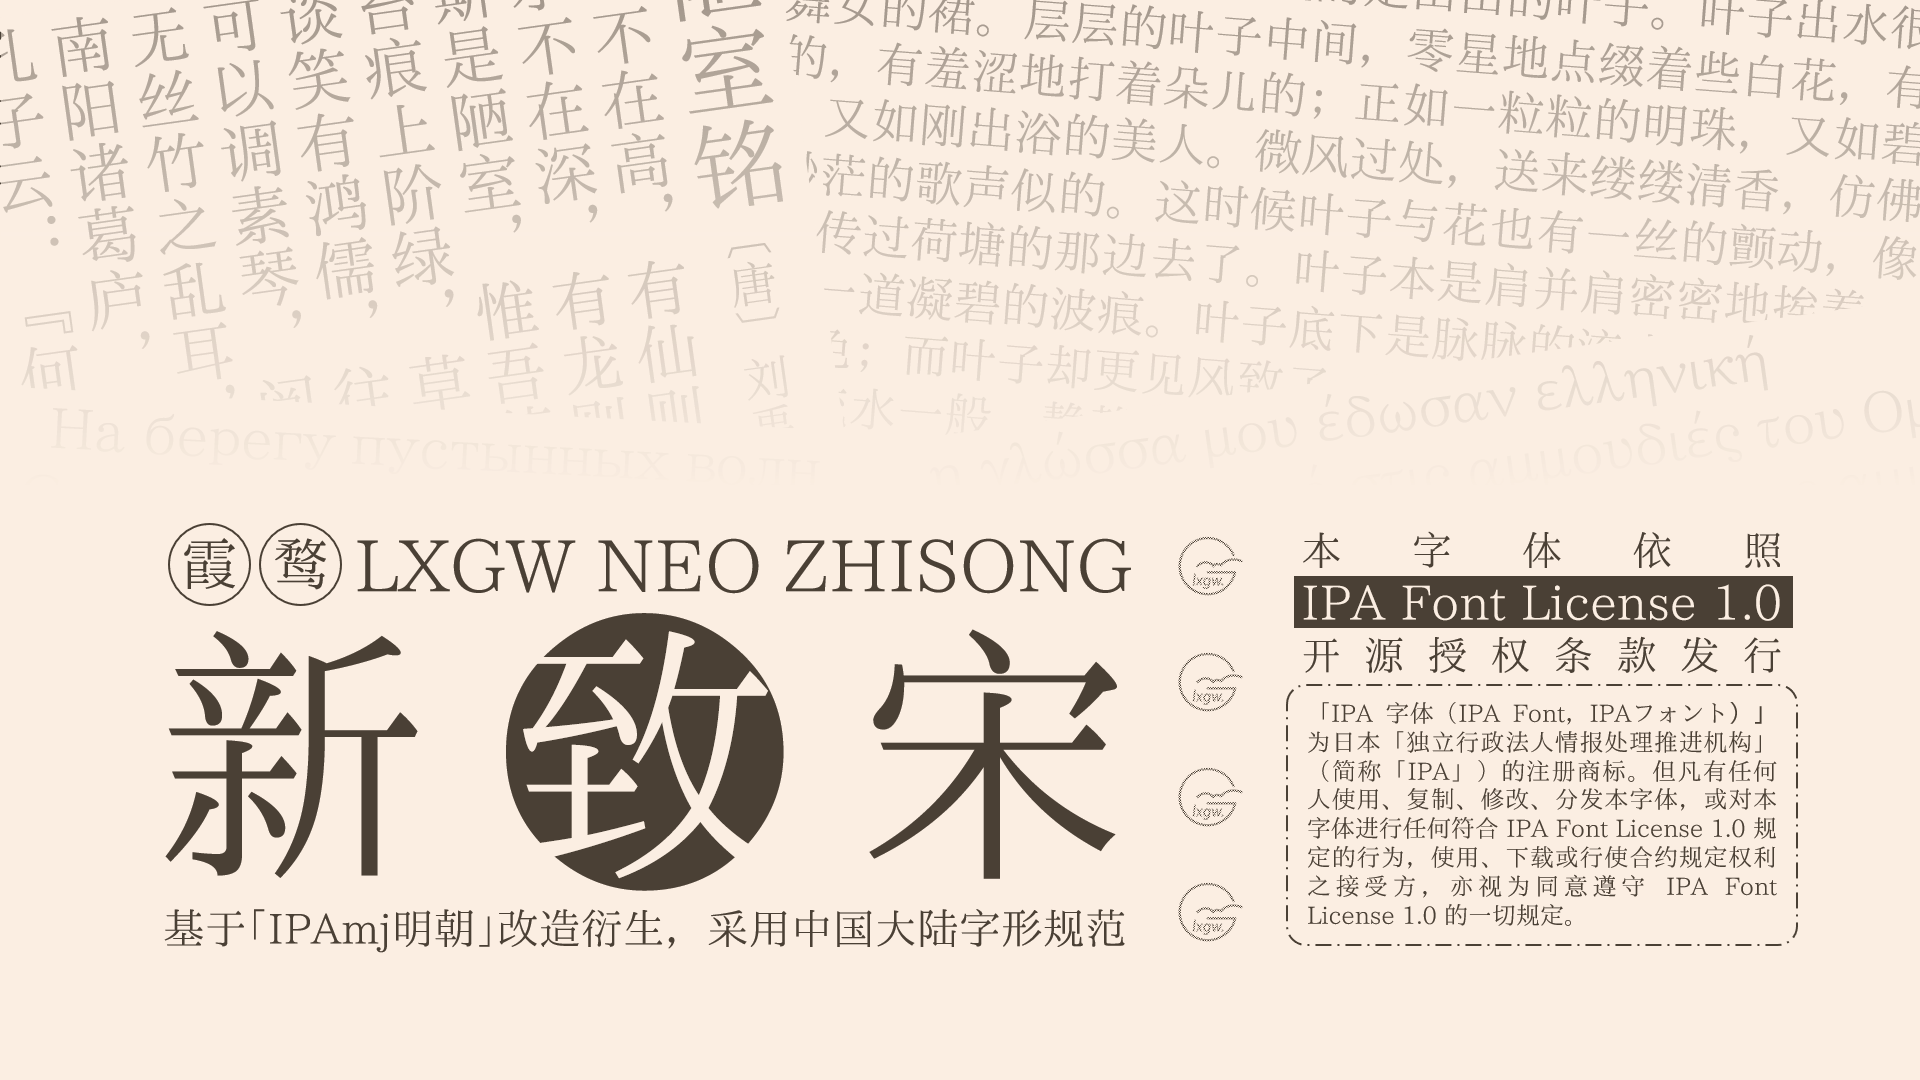 霞鹜新致宋首页、文档和下载- 开源中文字体- OSCHINA - 中文开源技术